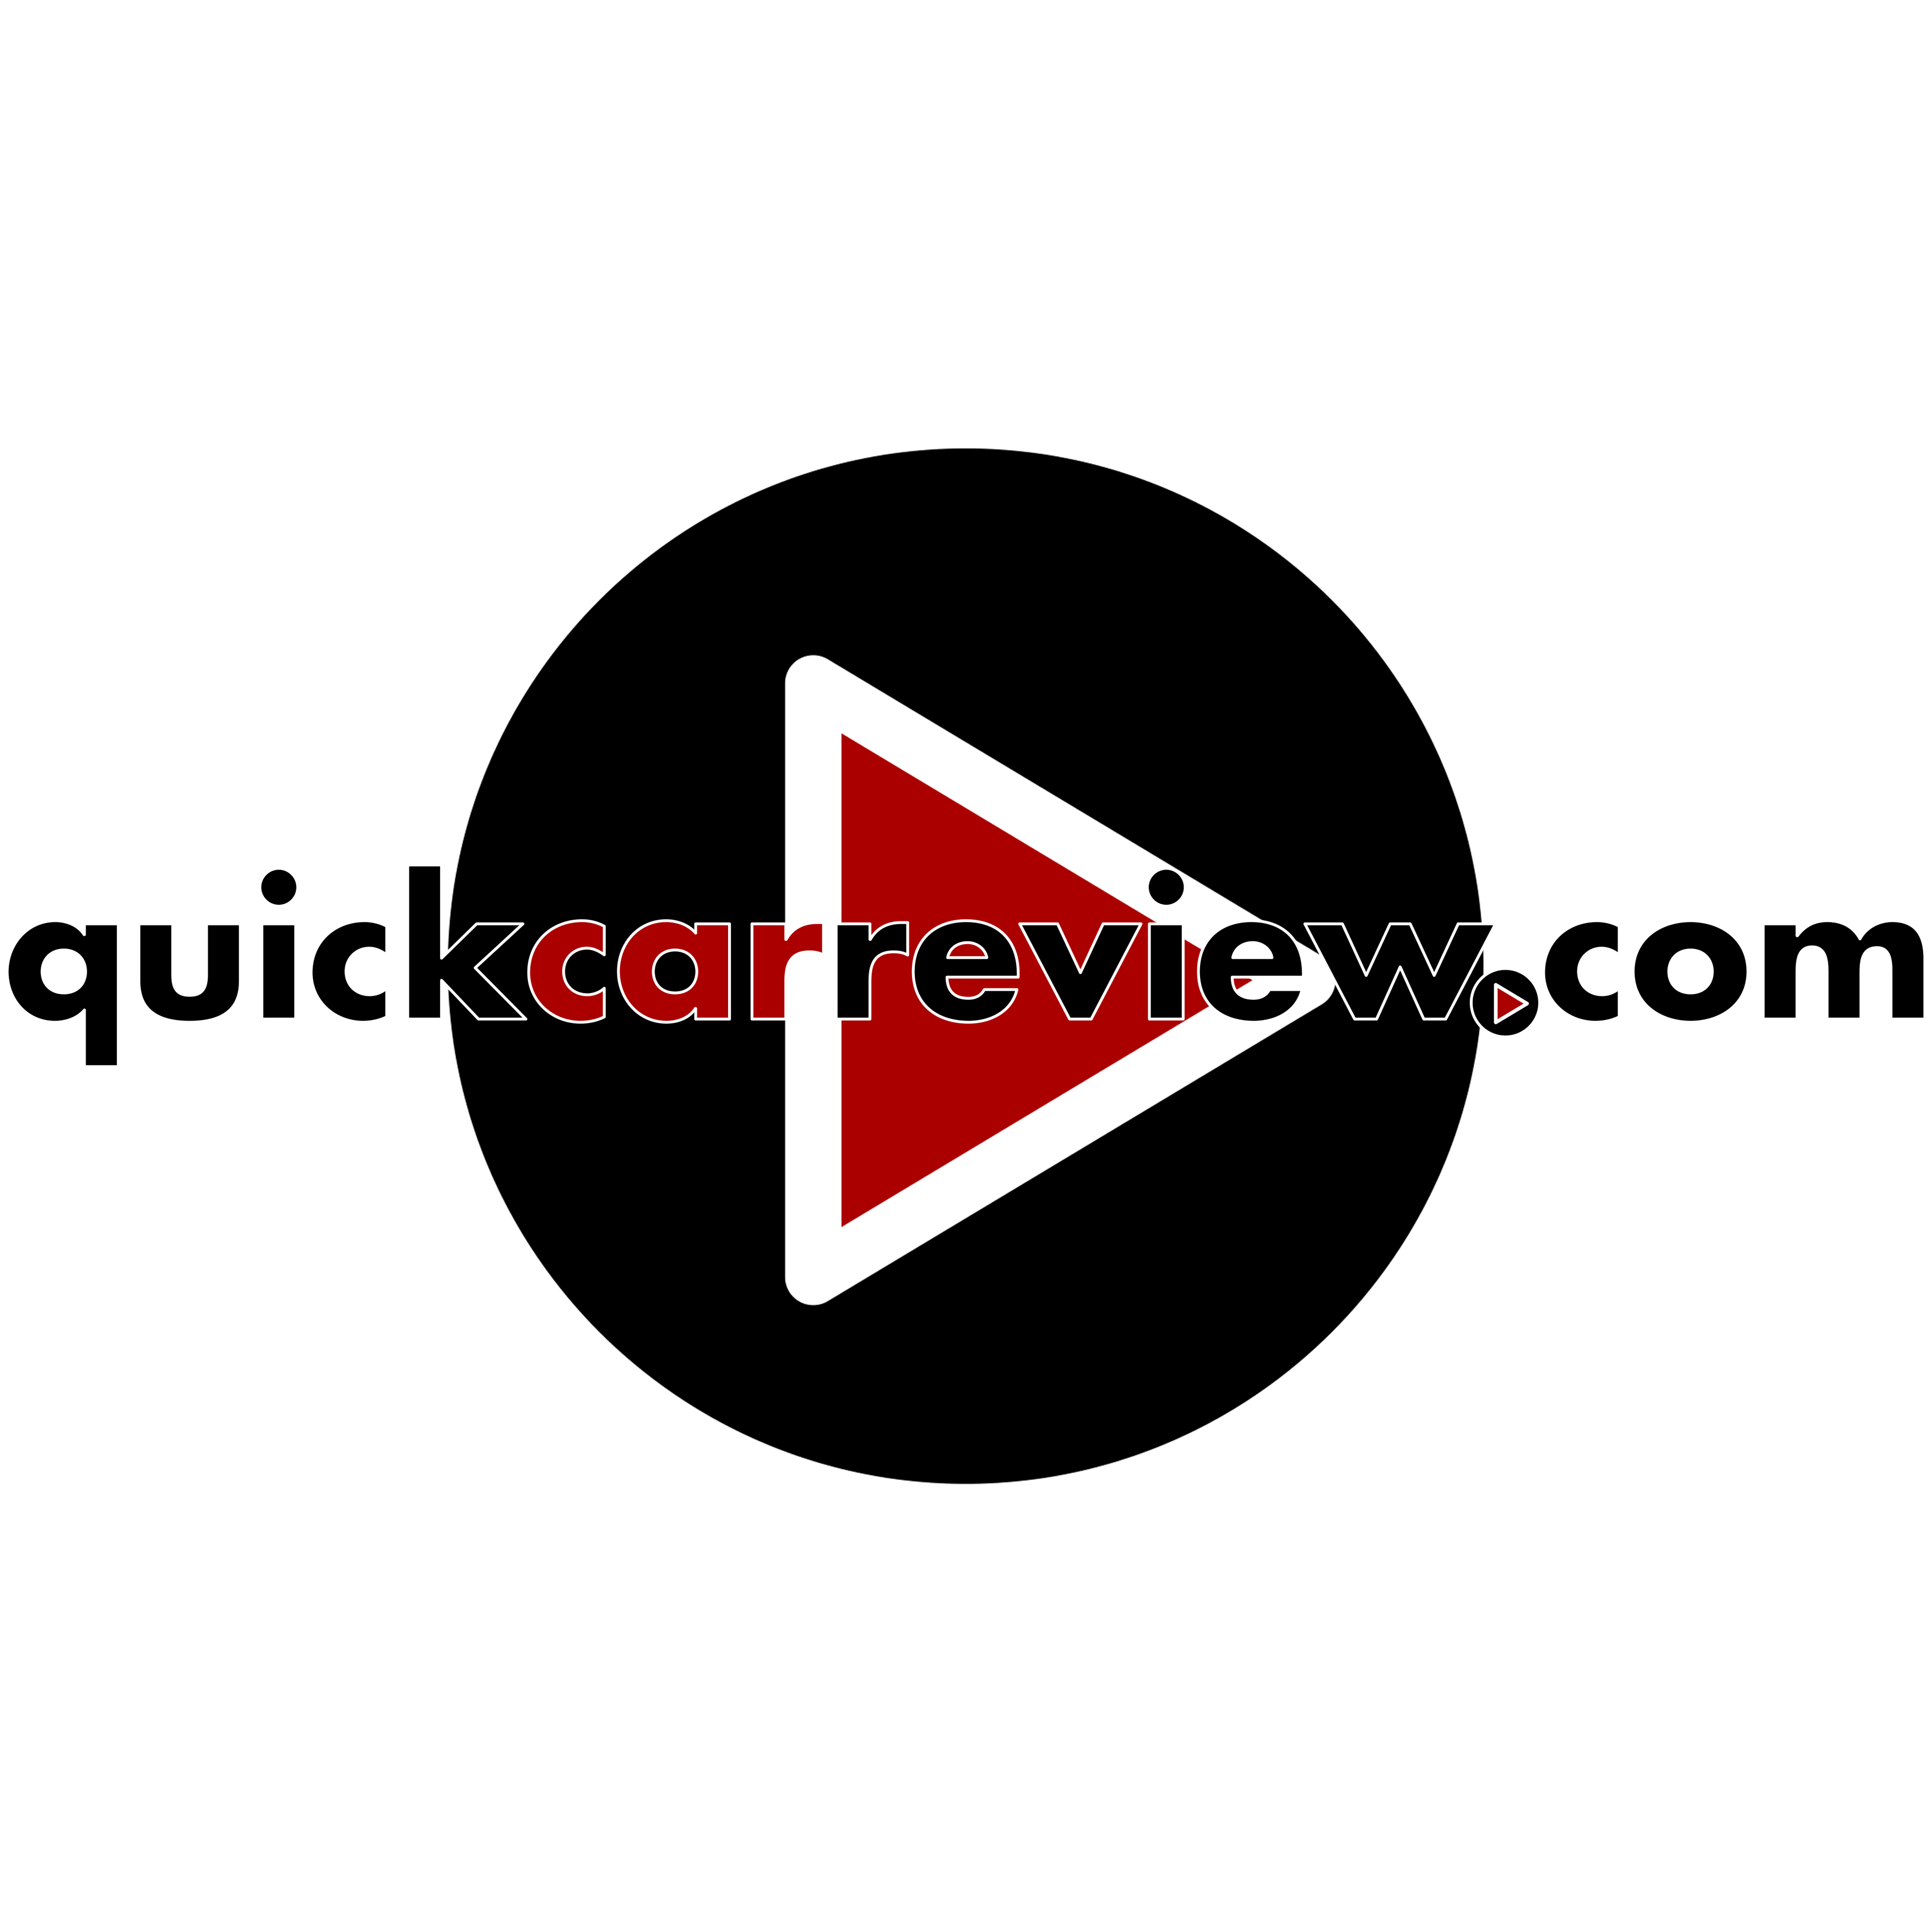 quickcareview.com - Free Car Video Reviews